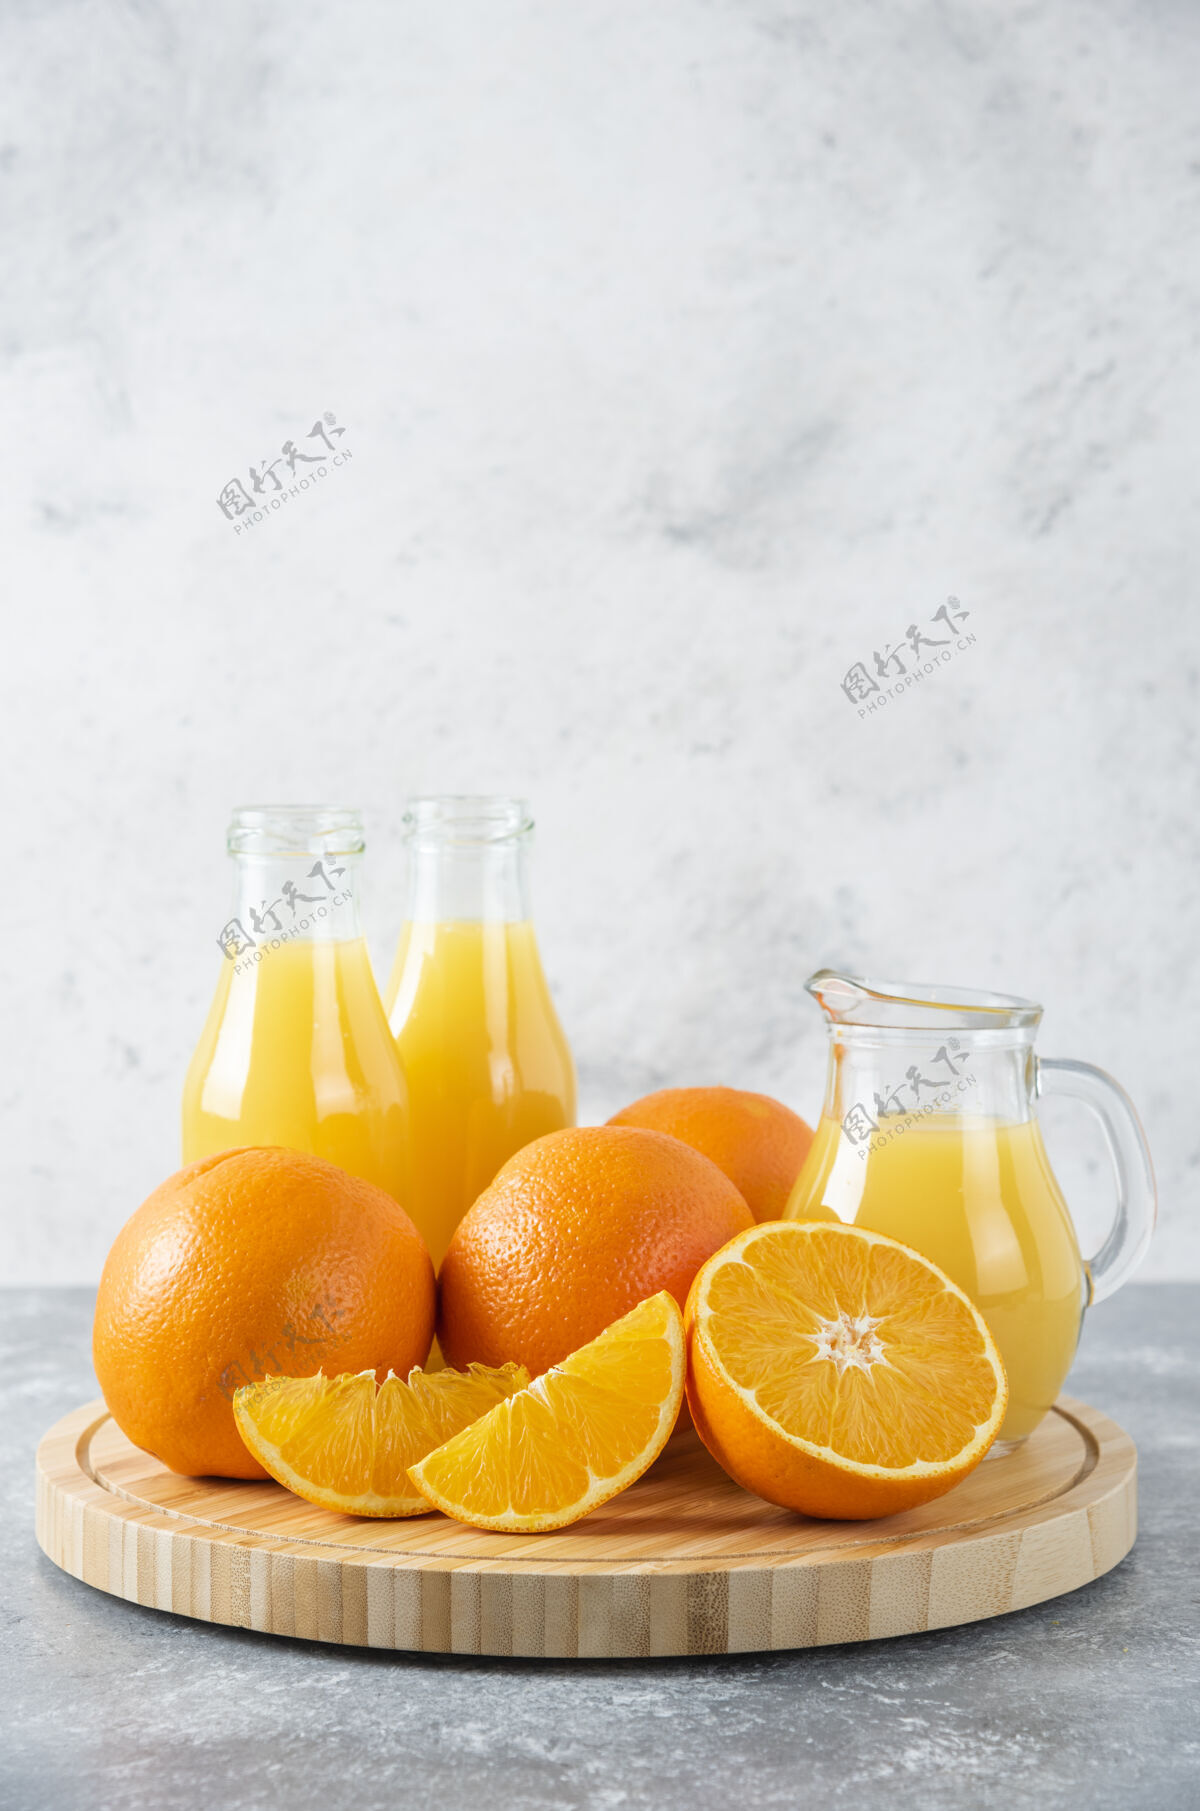 口味石桌上放满了橙子汁的木板切片美味天然